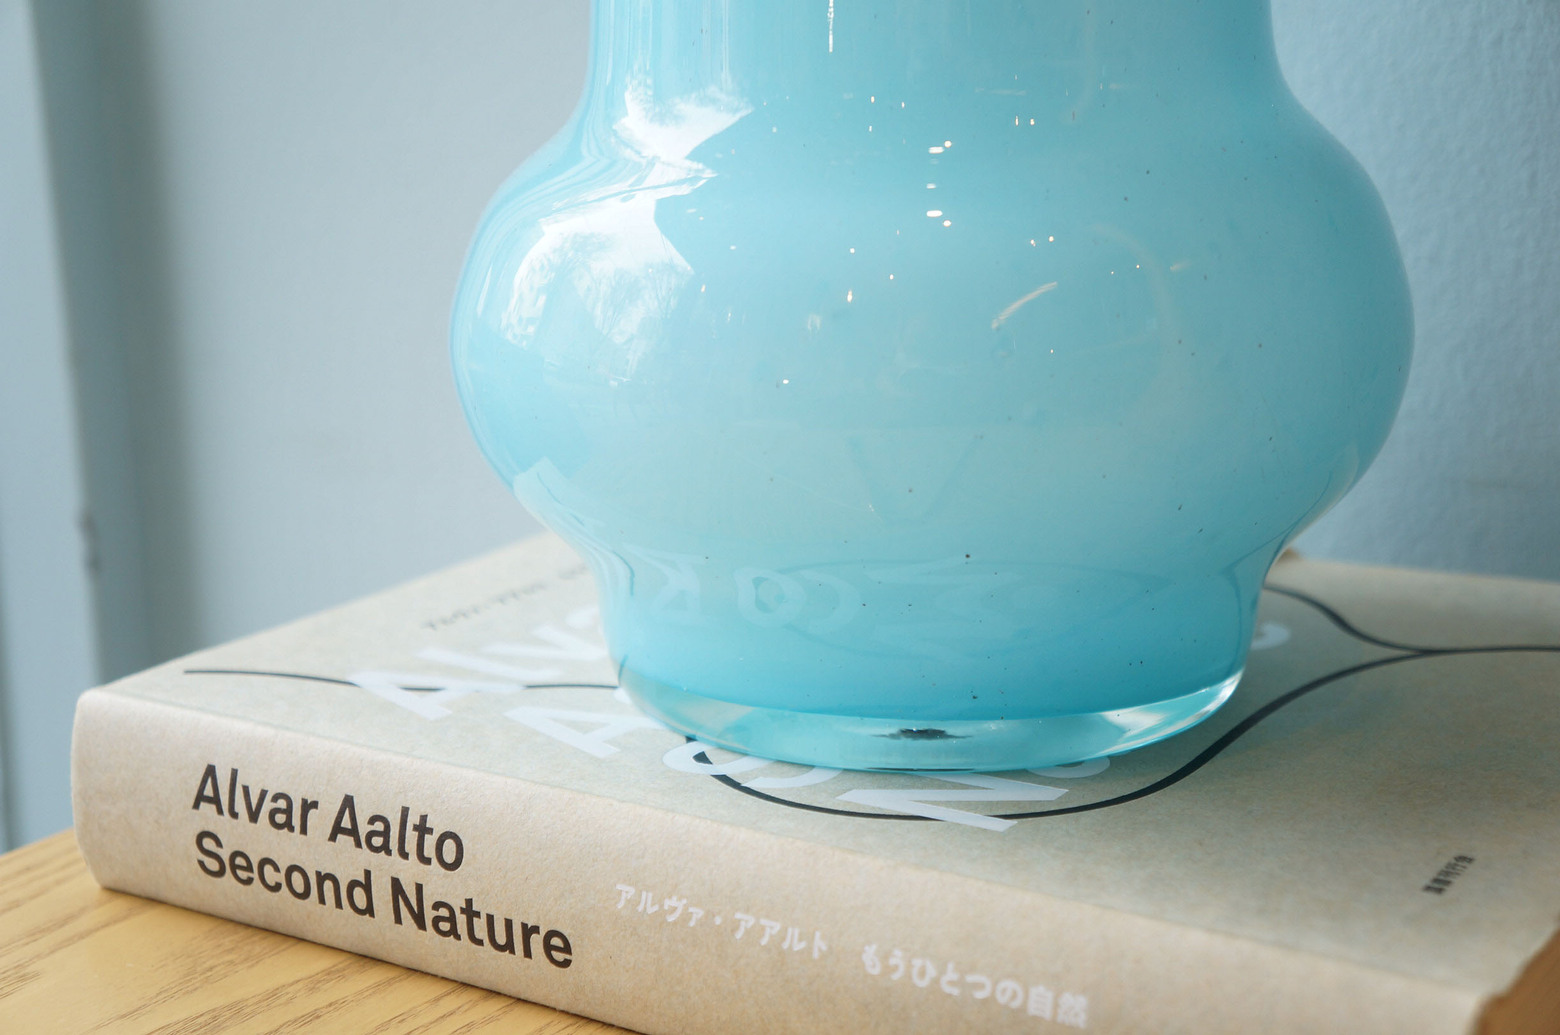 Japanese Vintage IWATA Glass Table Lamp/岩田ガラス テーブルランプ 照明 レトロモダン インテリア ジャパンヴィンテージ ライトブルー